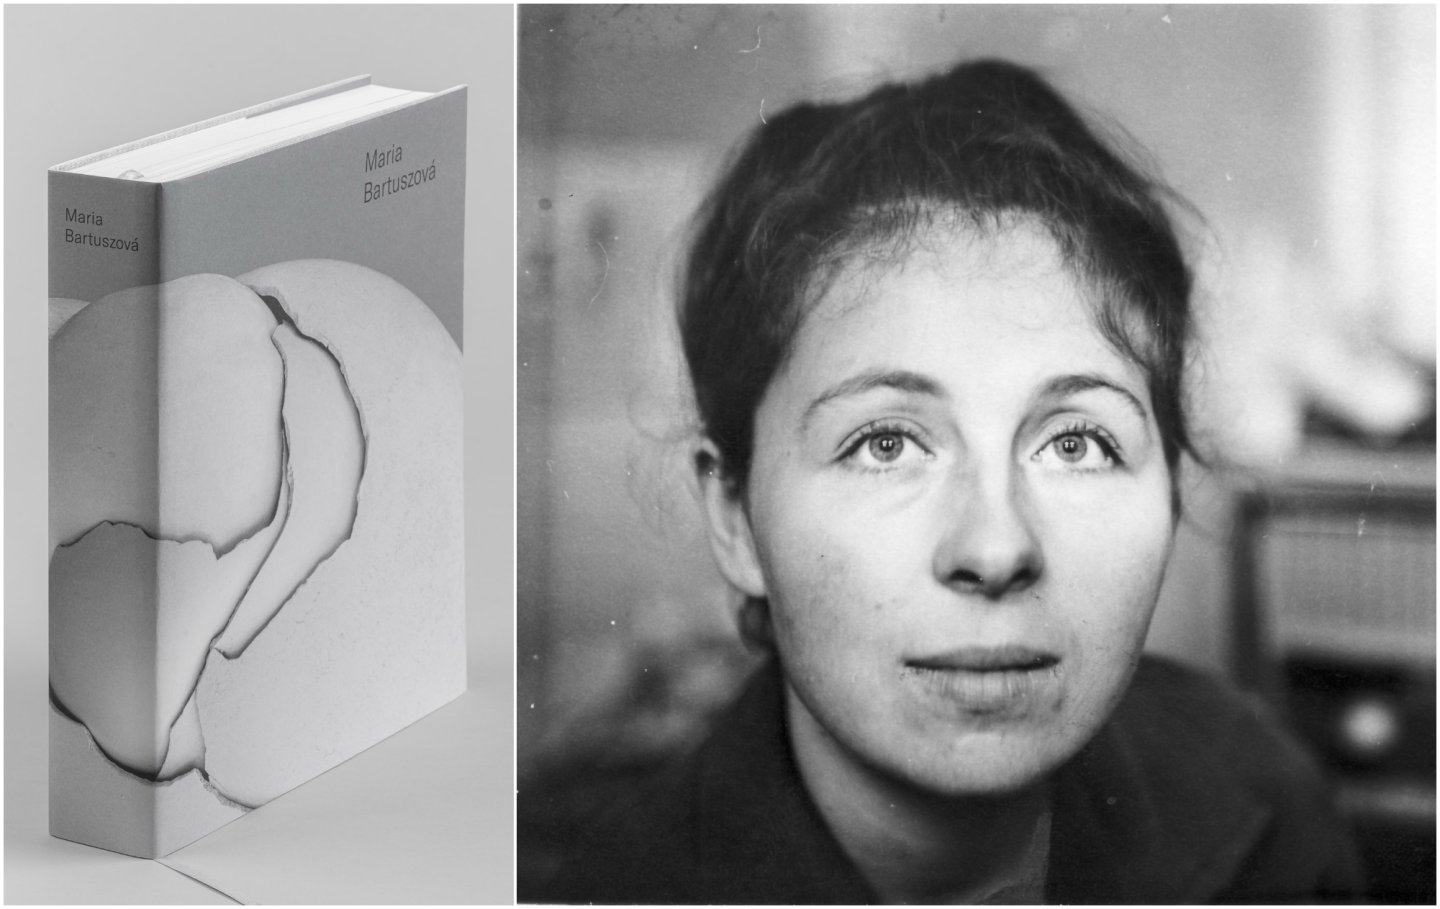 Vyznamenanú sochárku Mariu Bartuszovú sme naplno objavili až 26 rokov po jej smrti. Jej dielo vystavia v londýnskej Tate Modern